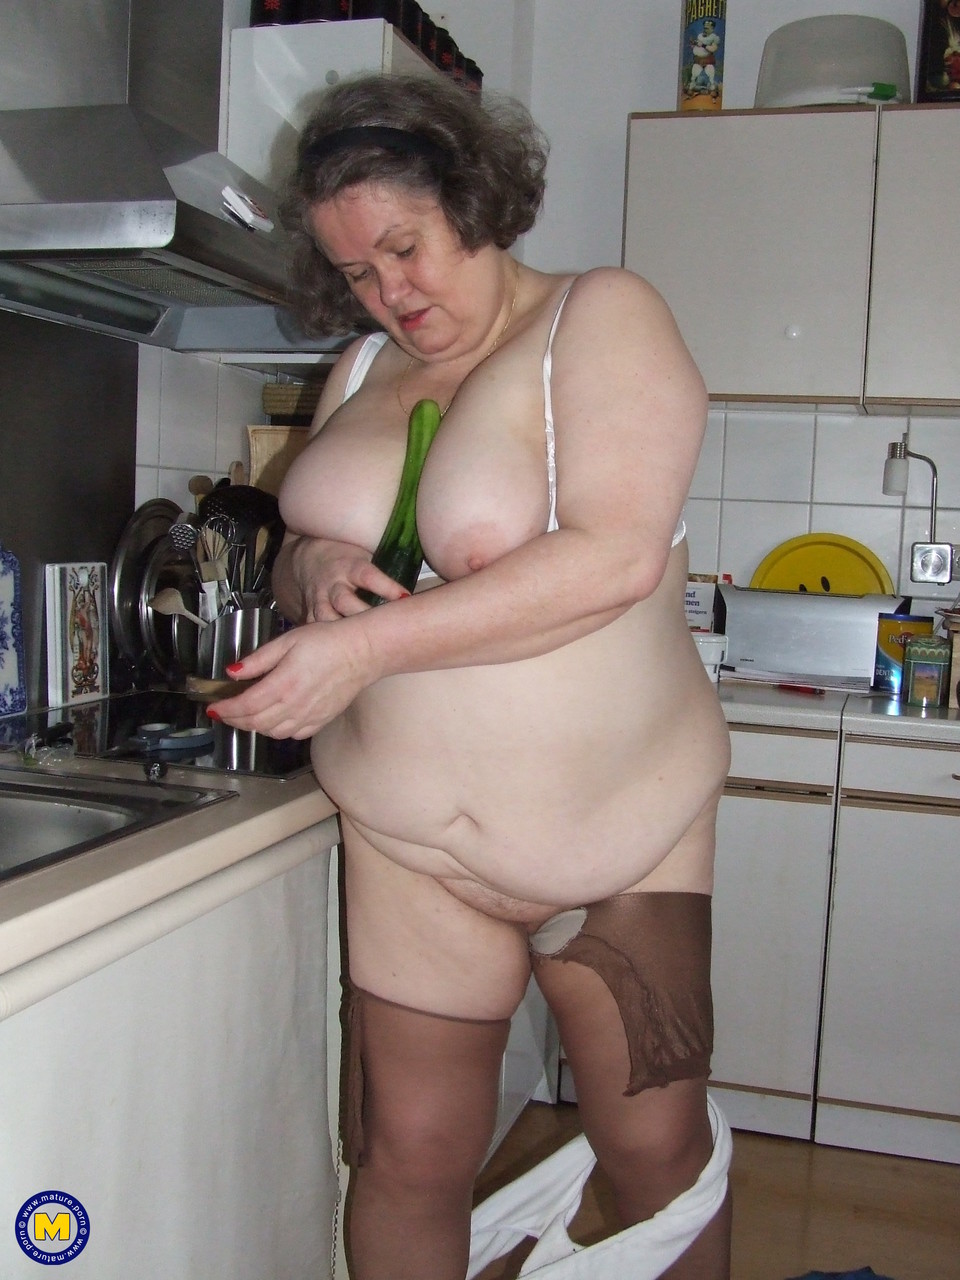 Fat mature housewife Birgid masturbates with a cucumber in the kitchen porno foto #423883225 | Mature NL Pics, Birgid, Granny, mobiele porno